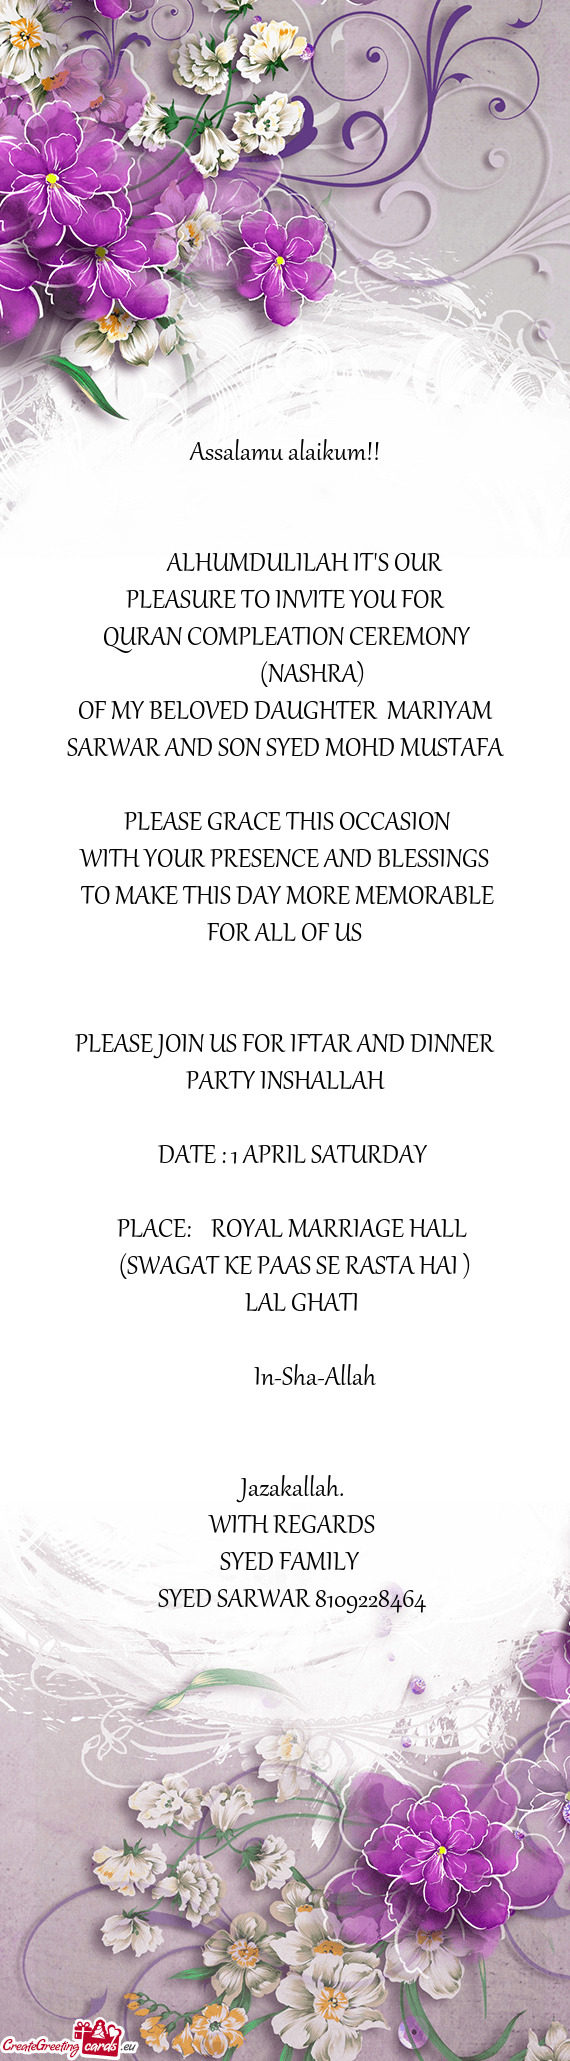 PLEASURE TO INVITE YOU FOR